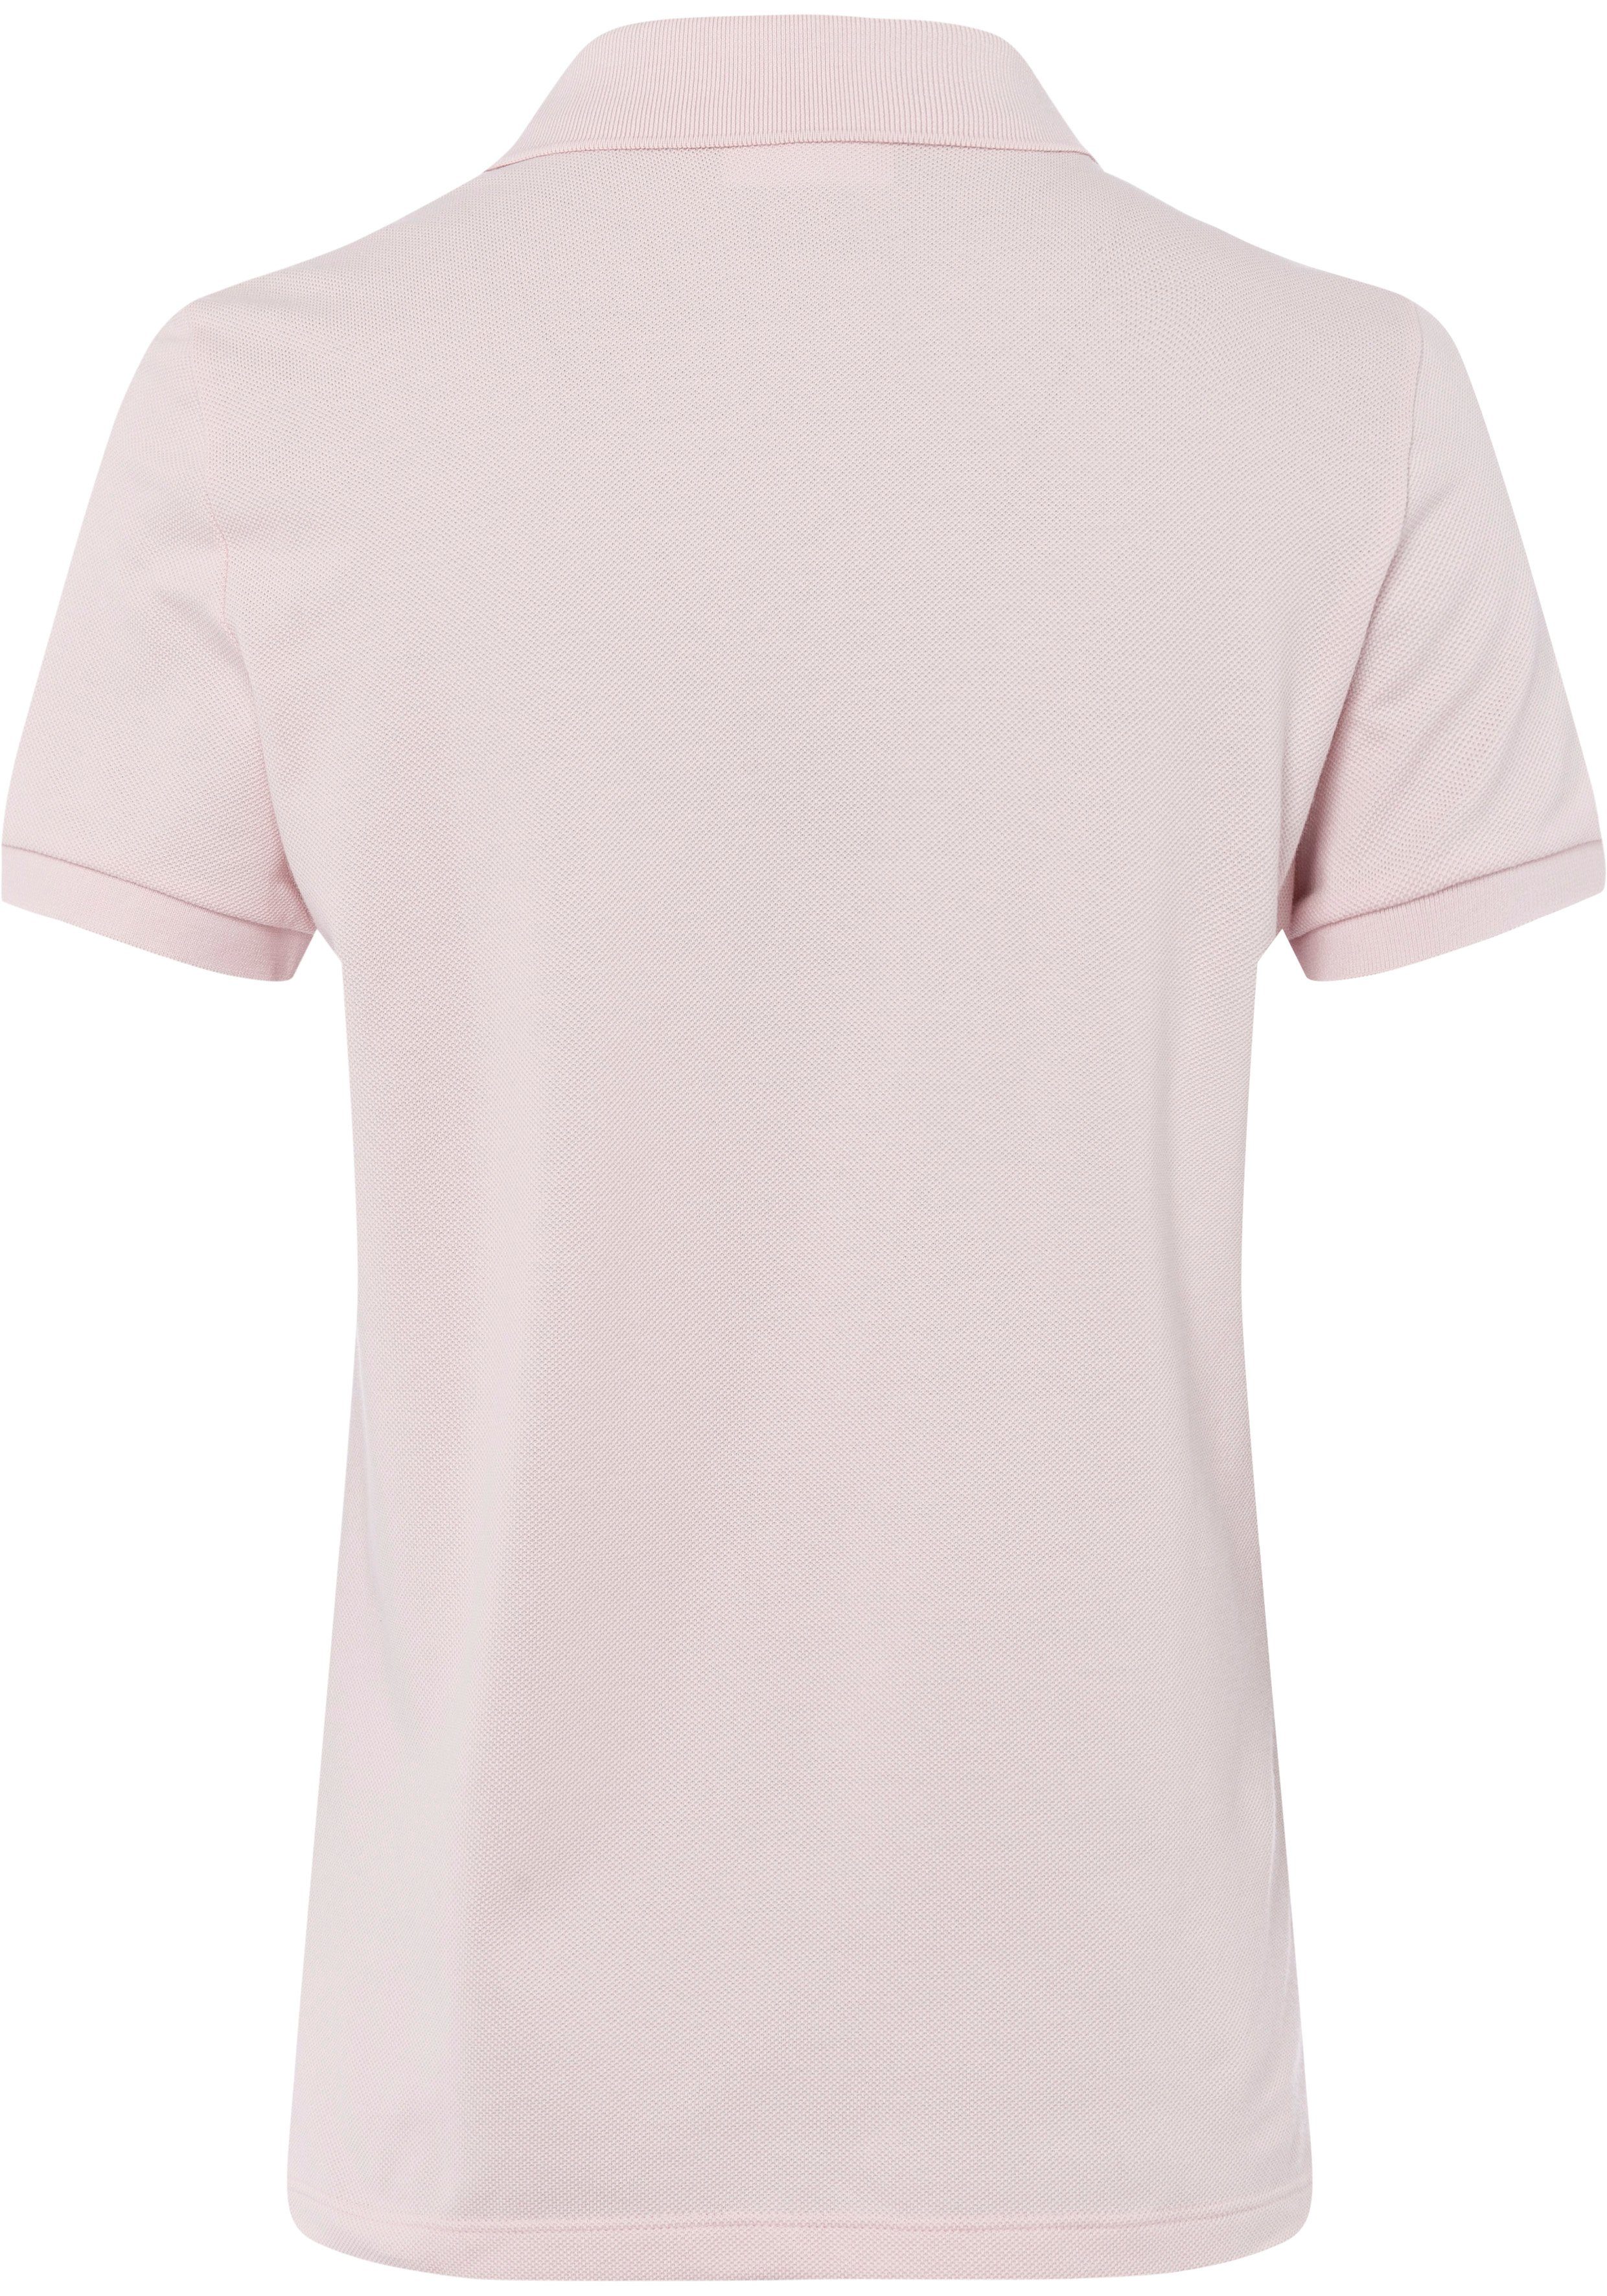 Lacoste Poloshirt mit Brust der Lacoste-Logo-Patch rosa auf